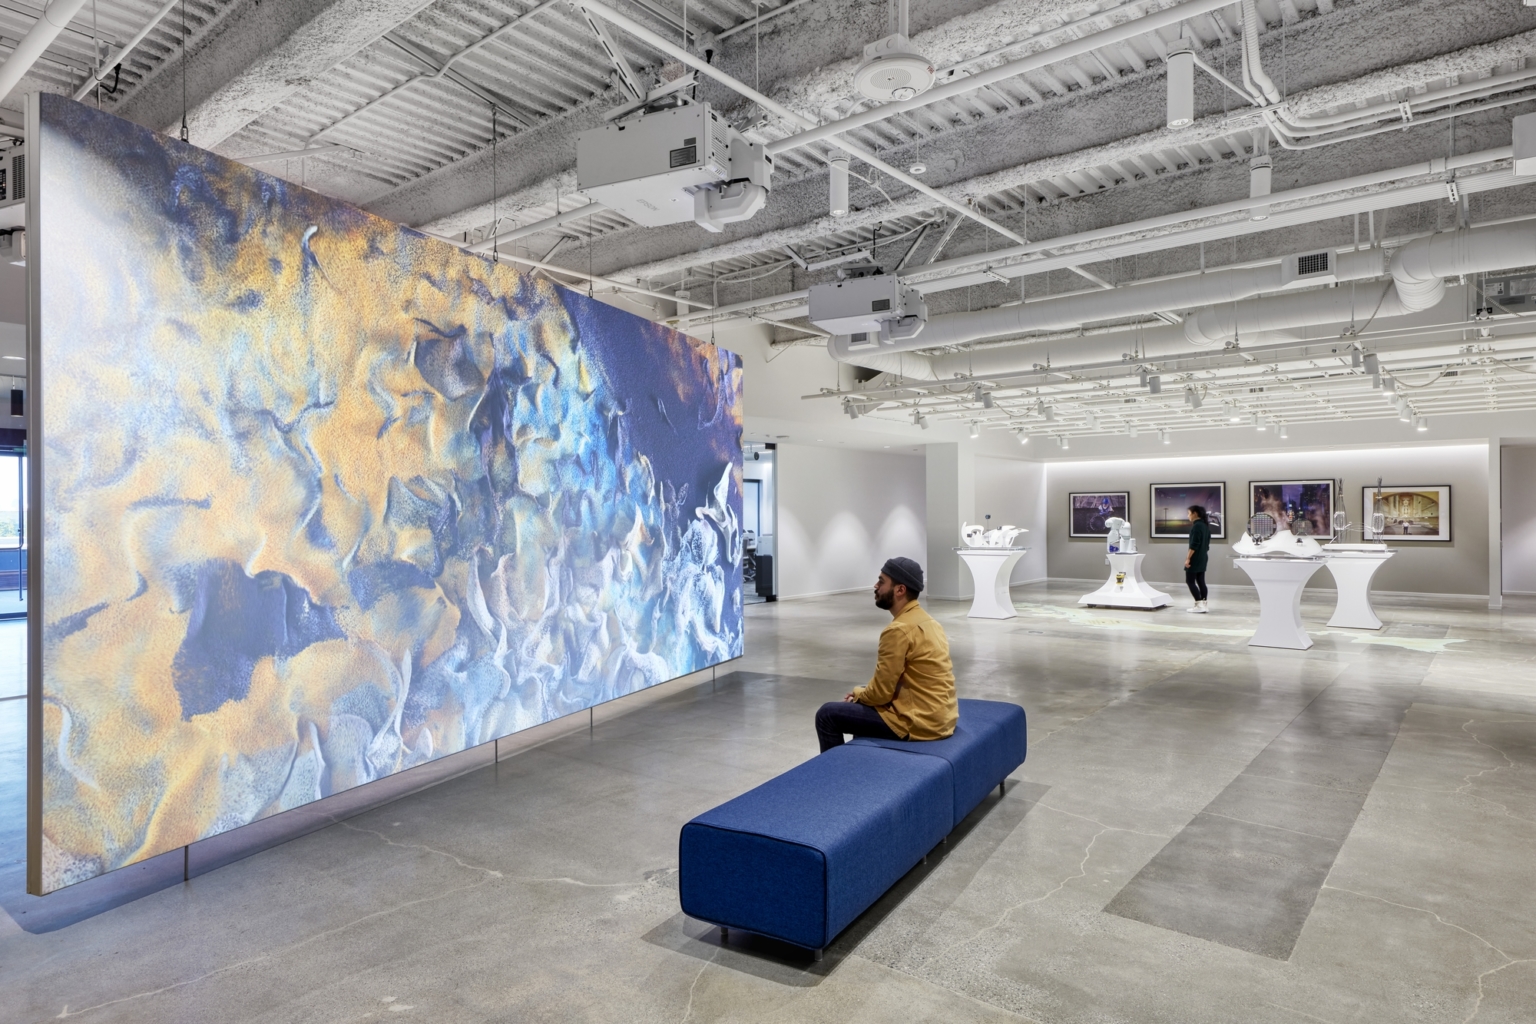 【エプソンのオフィスデザイン】- カリフォルニア州, ロスアラミトスのオープンスペース